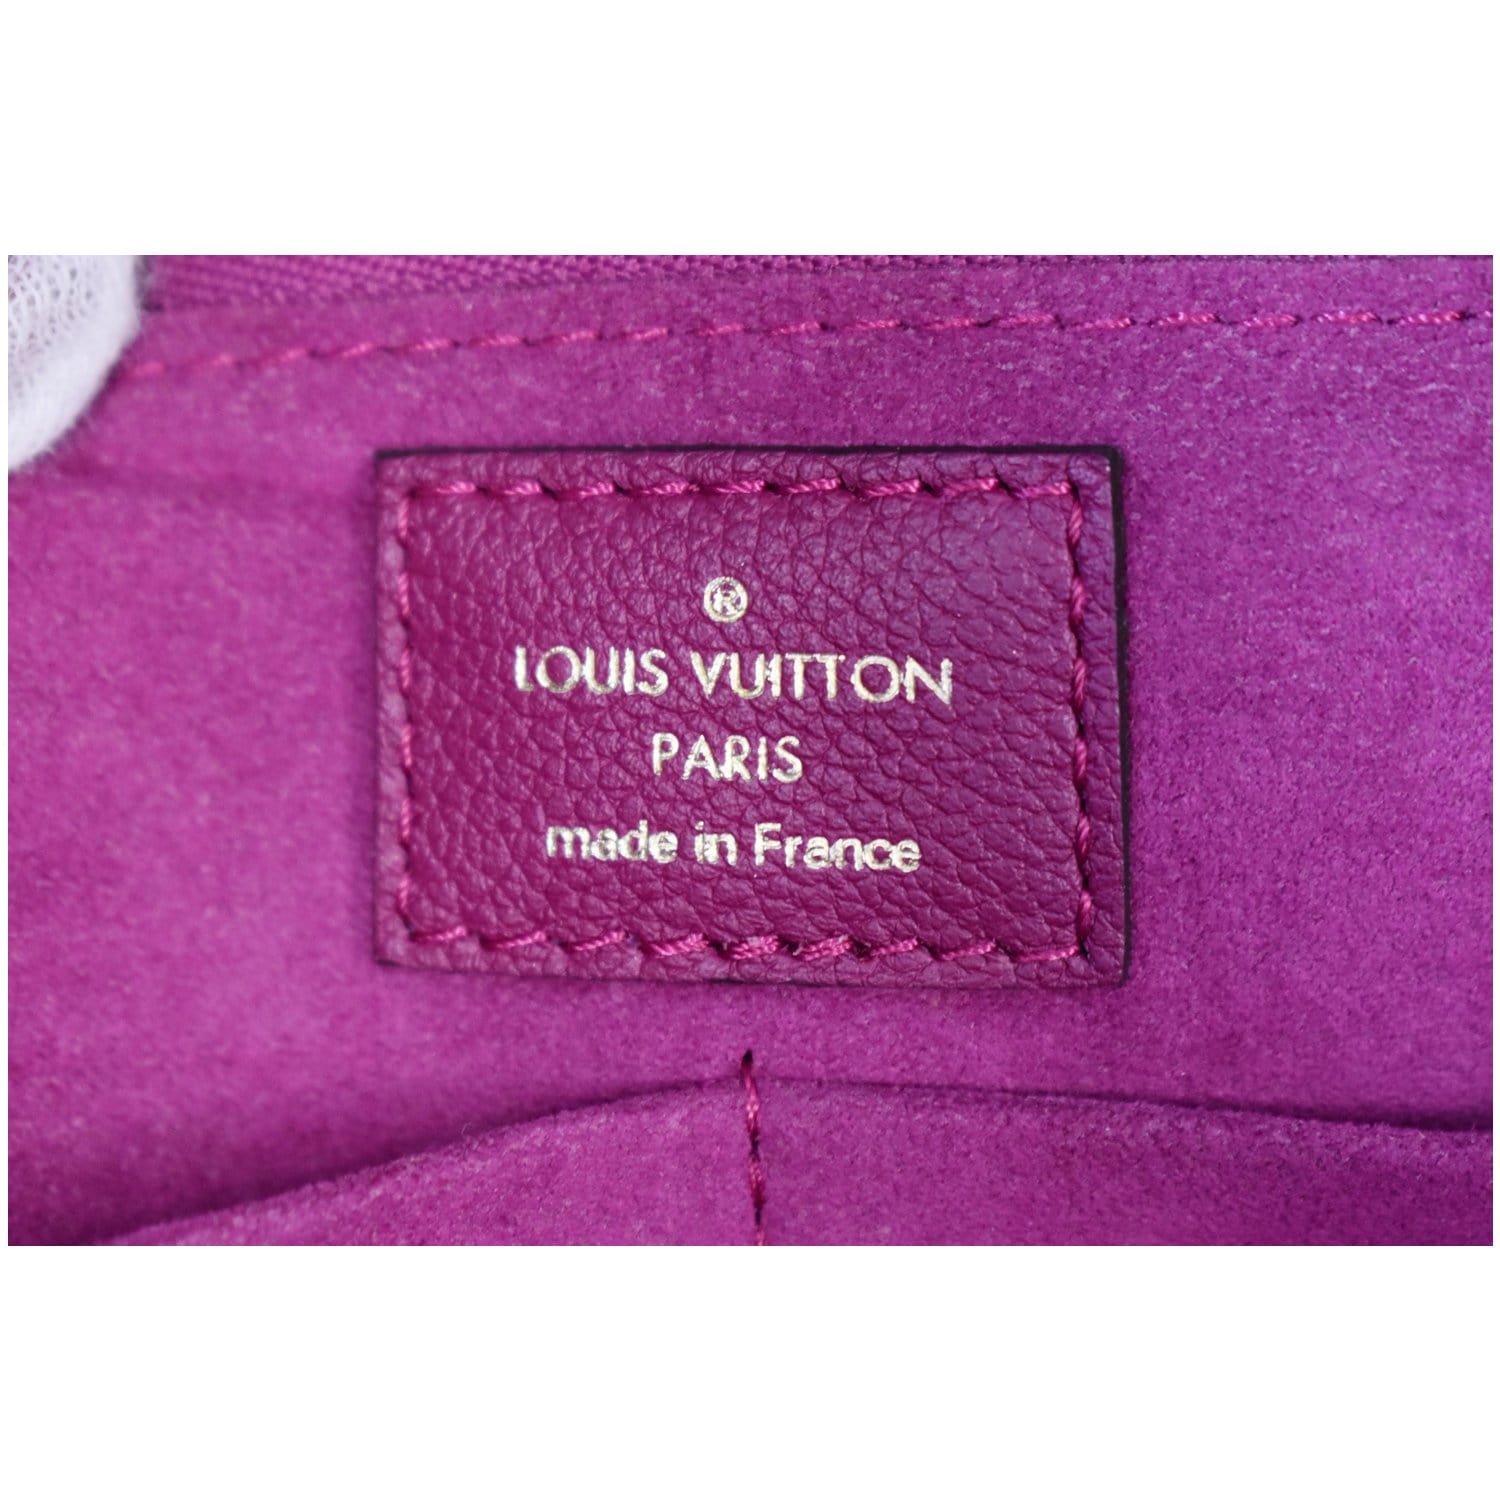 LOUIS VUITTON Monogram Monogram Kimono Wallet Cherry 1216097